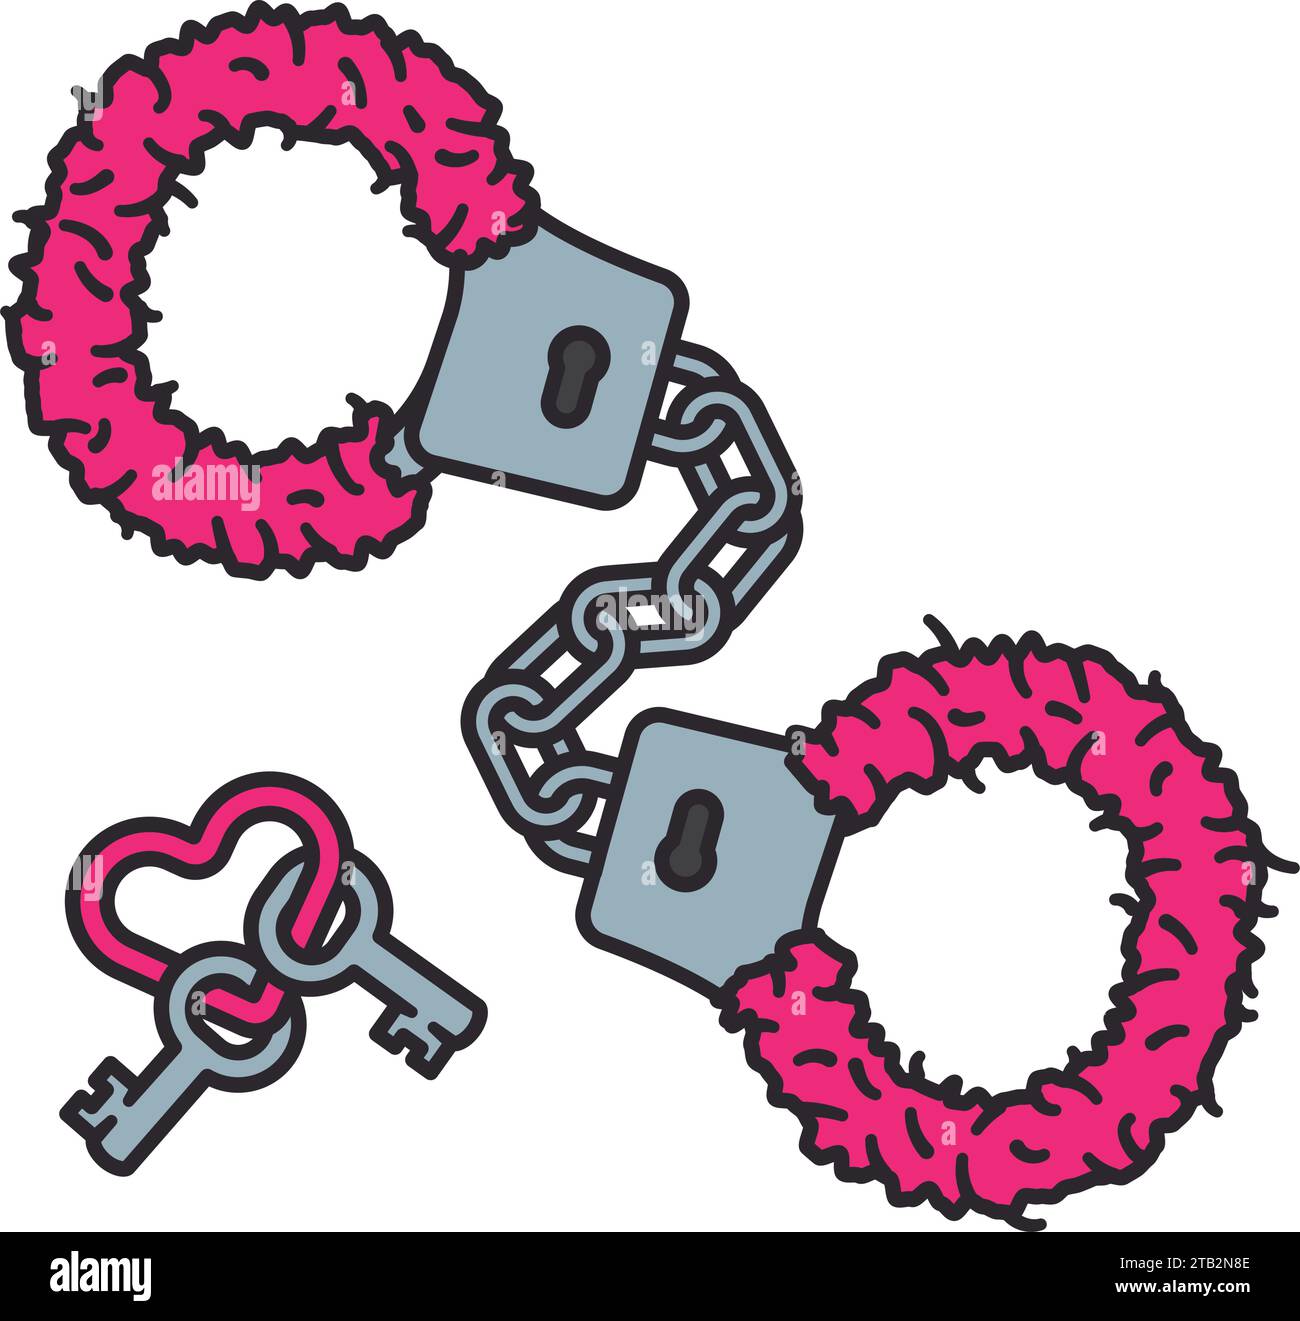 Rosa Fuzzy Handschellen Erwachsenenspielzeug und Schlüssel auf herzförmigem Schlüsselring isolierte Vektor-Illustration Stock Vektor